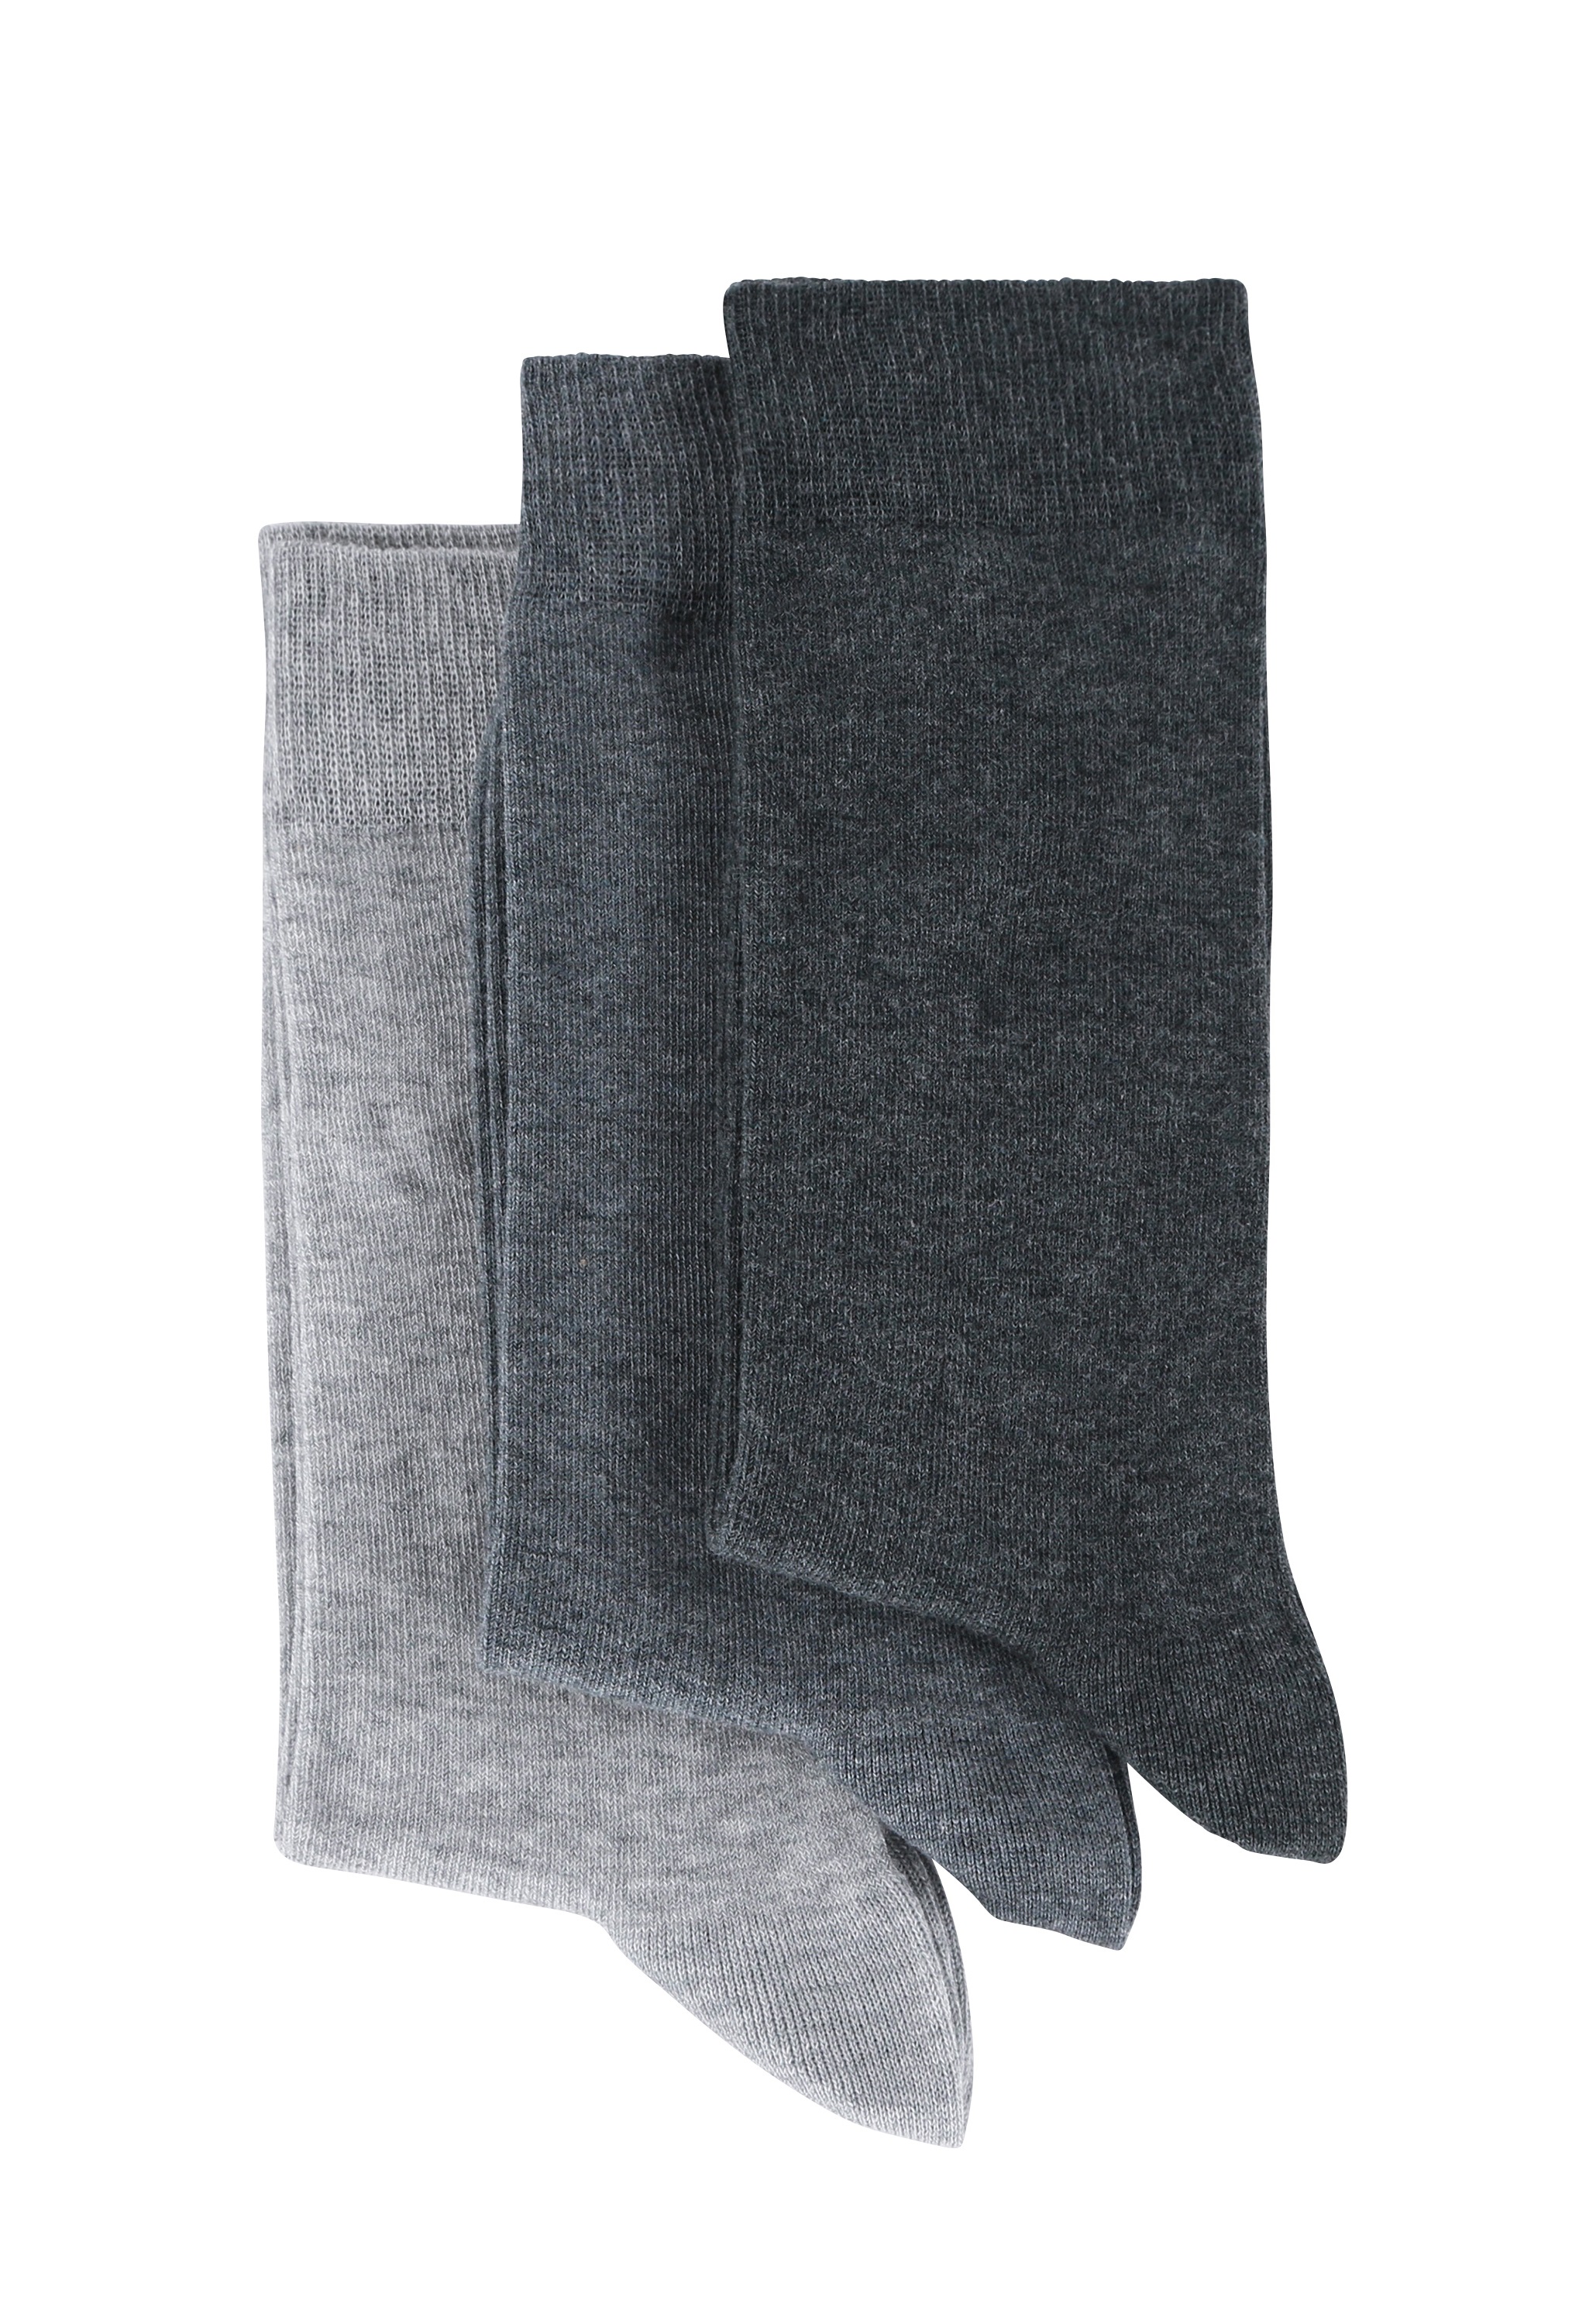 lot de 3 chaussettes coton unie gris